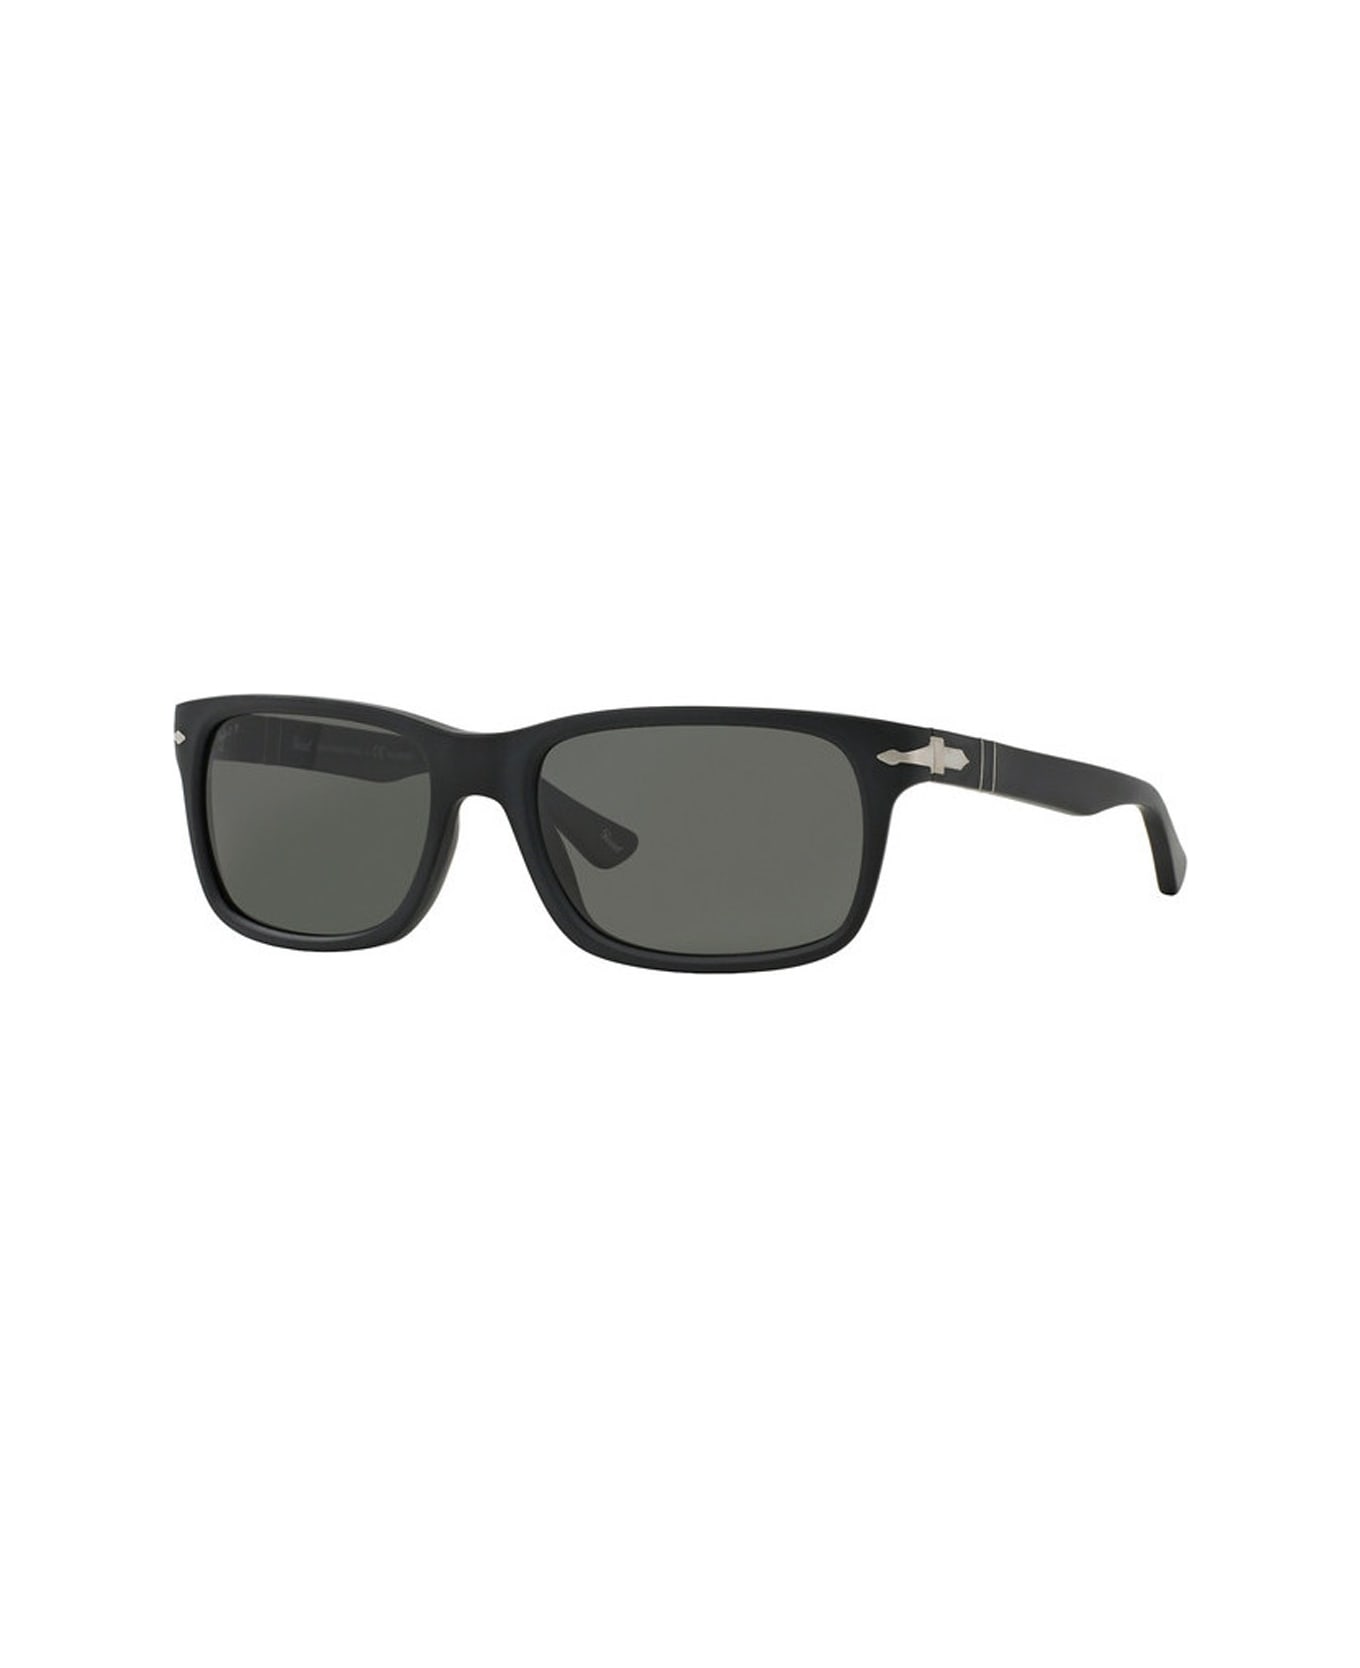 Persol Po3048s Sunglasses - Nero サングラス